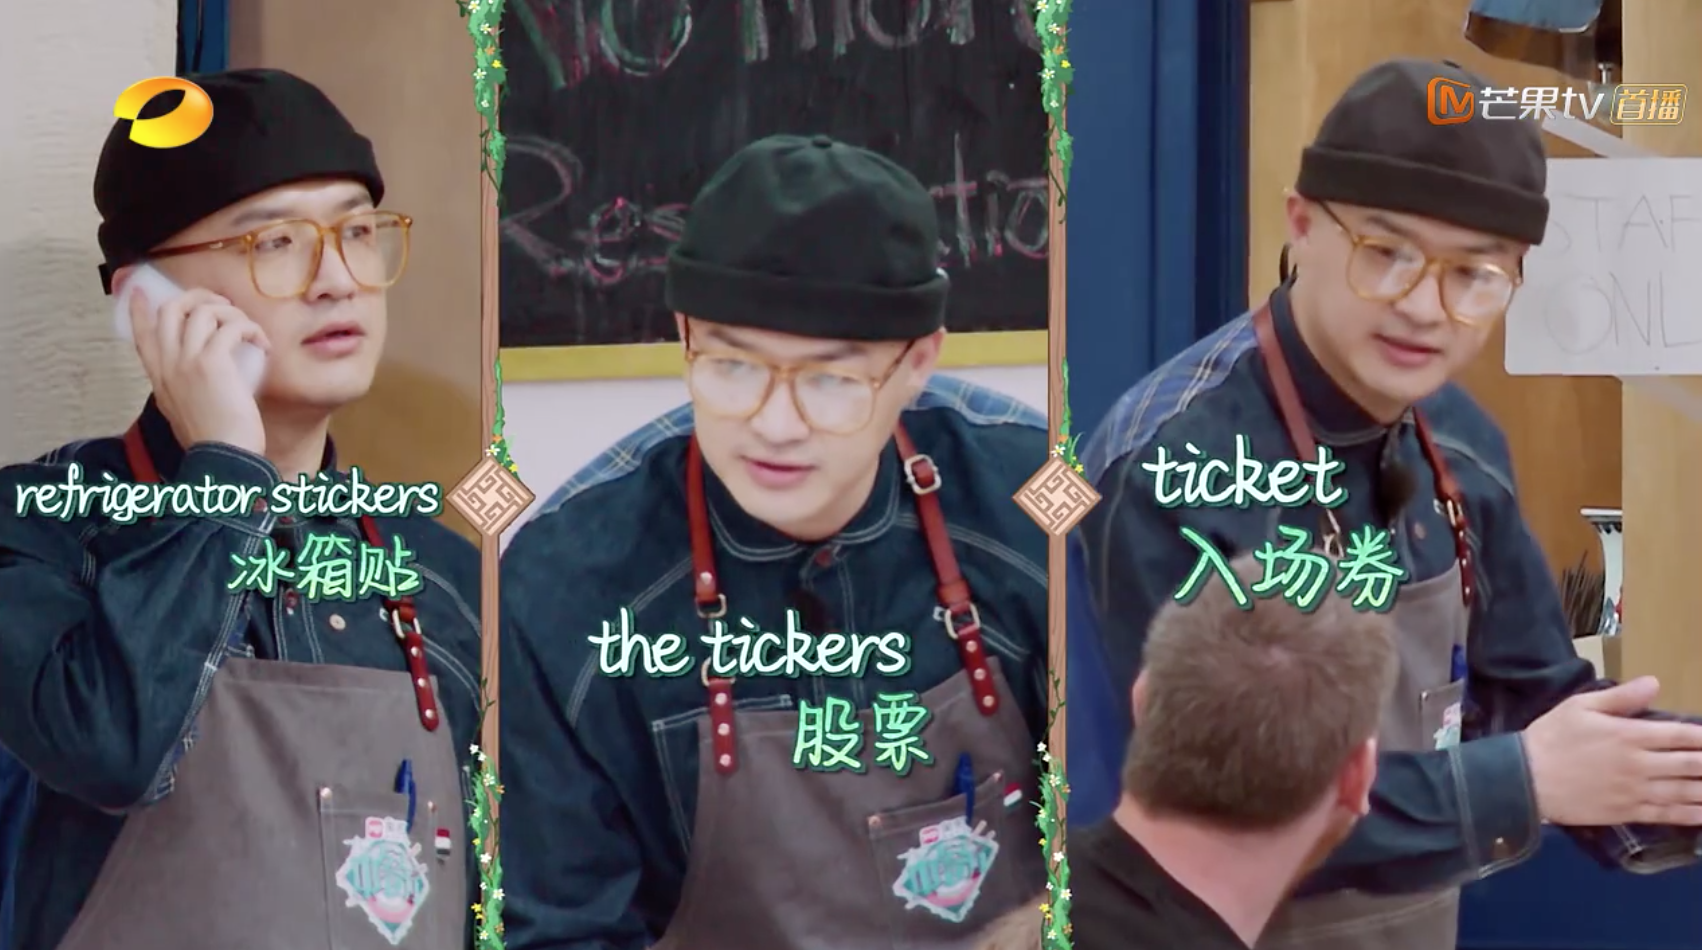 包贝尔杨子姗惊喜现身《中餐厅2》 用美图T9给顾客拍照服务满分